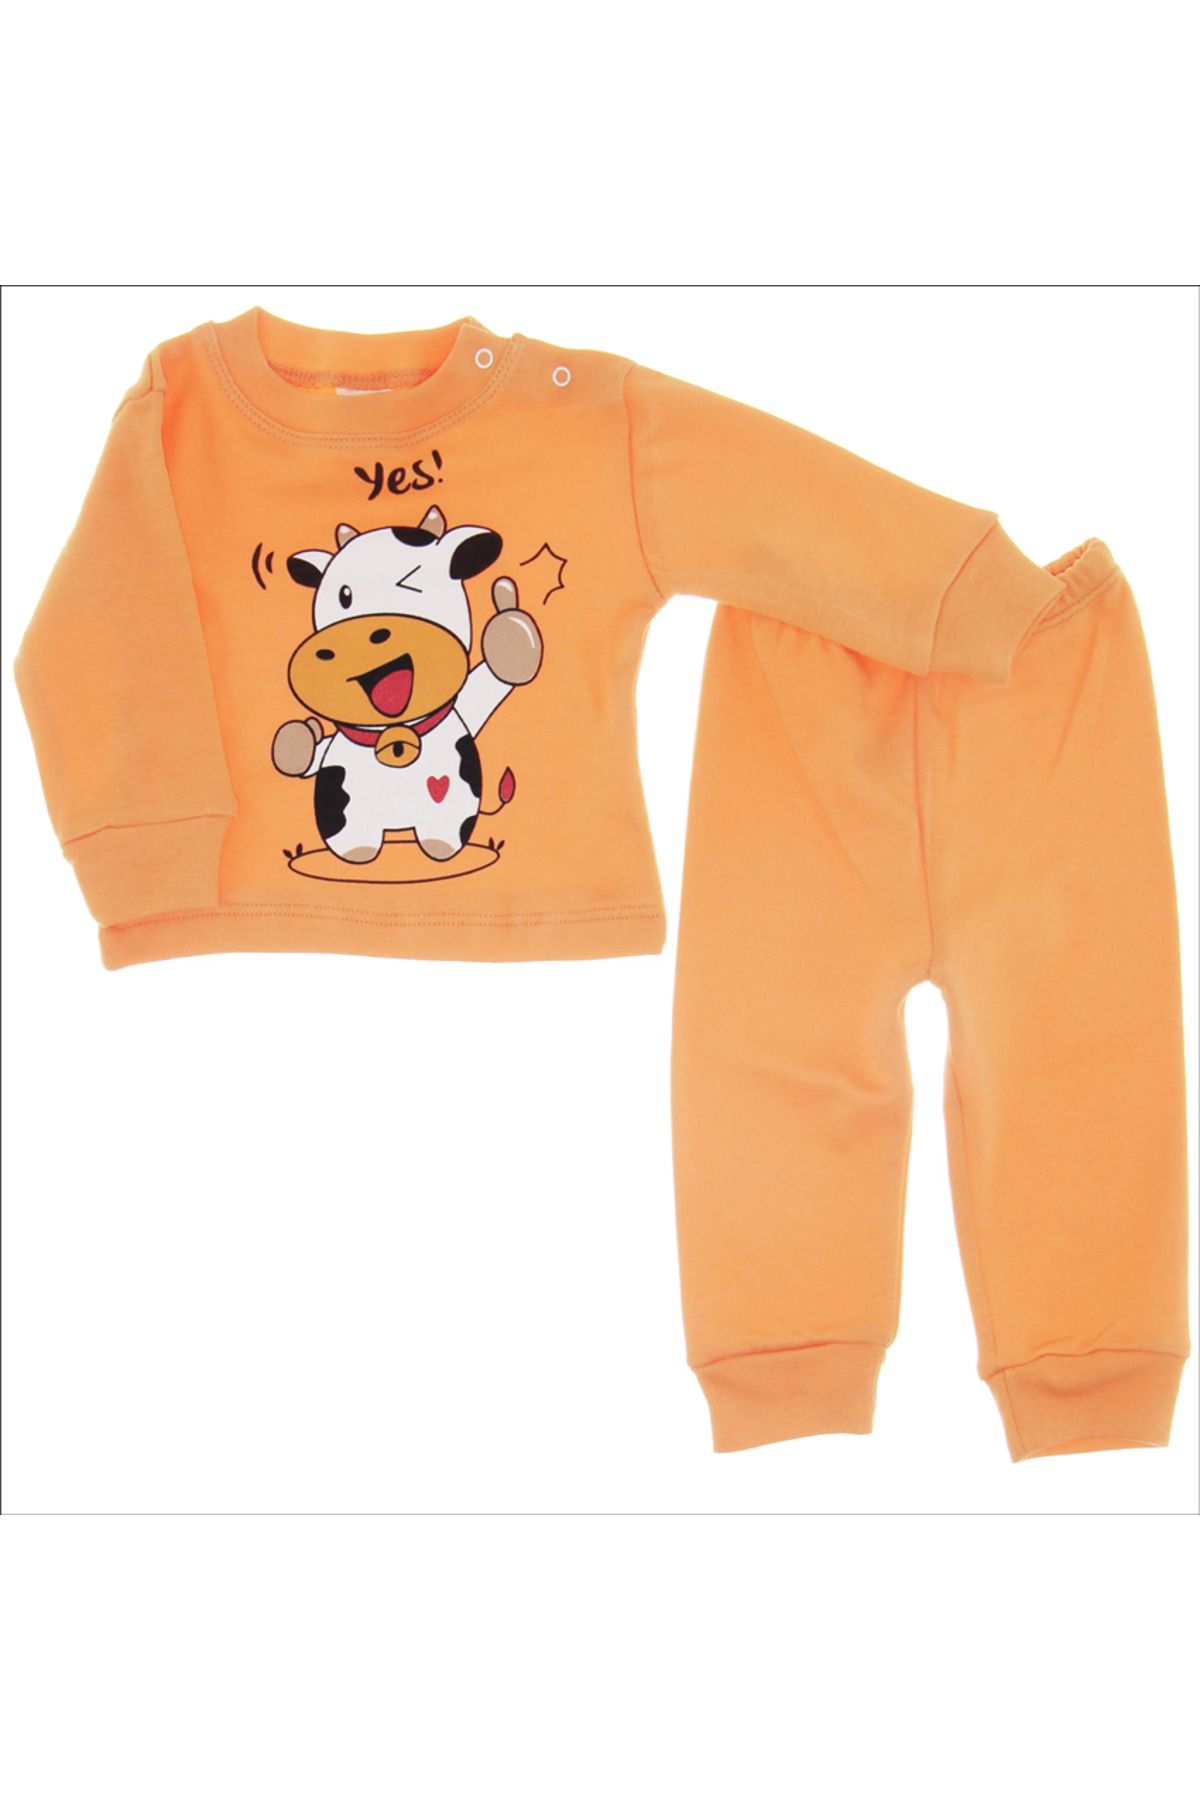 Mimoza Shop MB- İnek Baskılı Bebek Pijama Takımı ( turuncu renk )